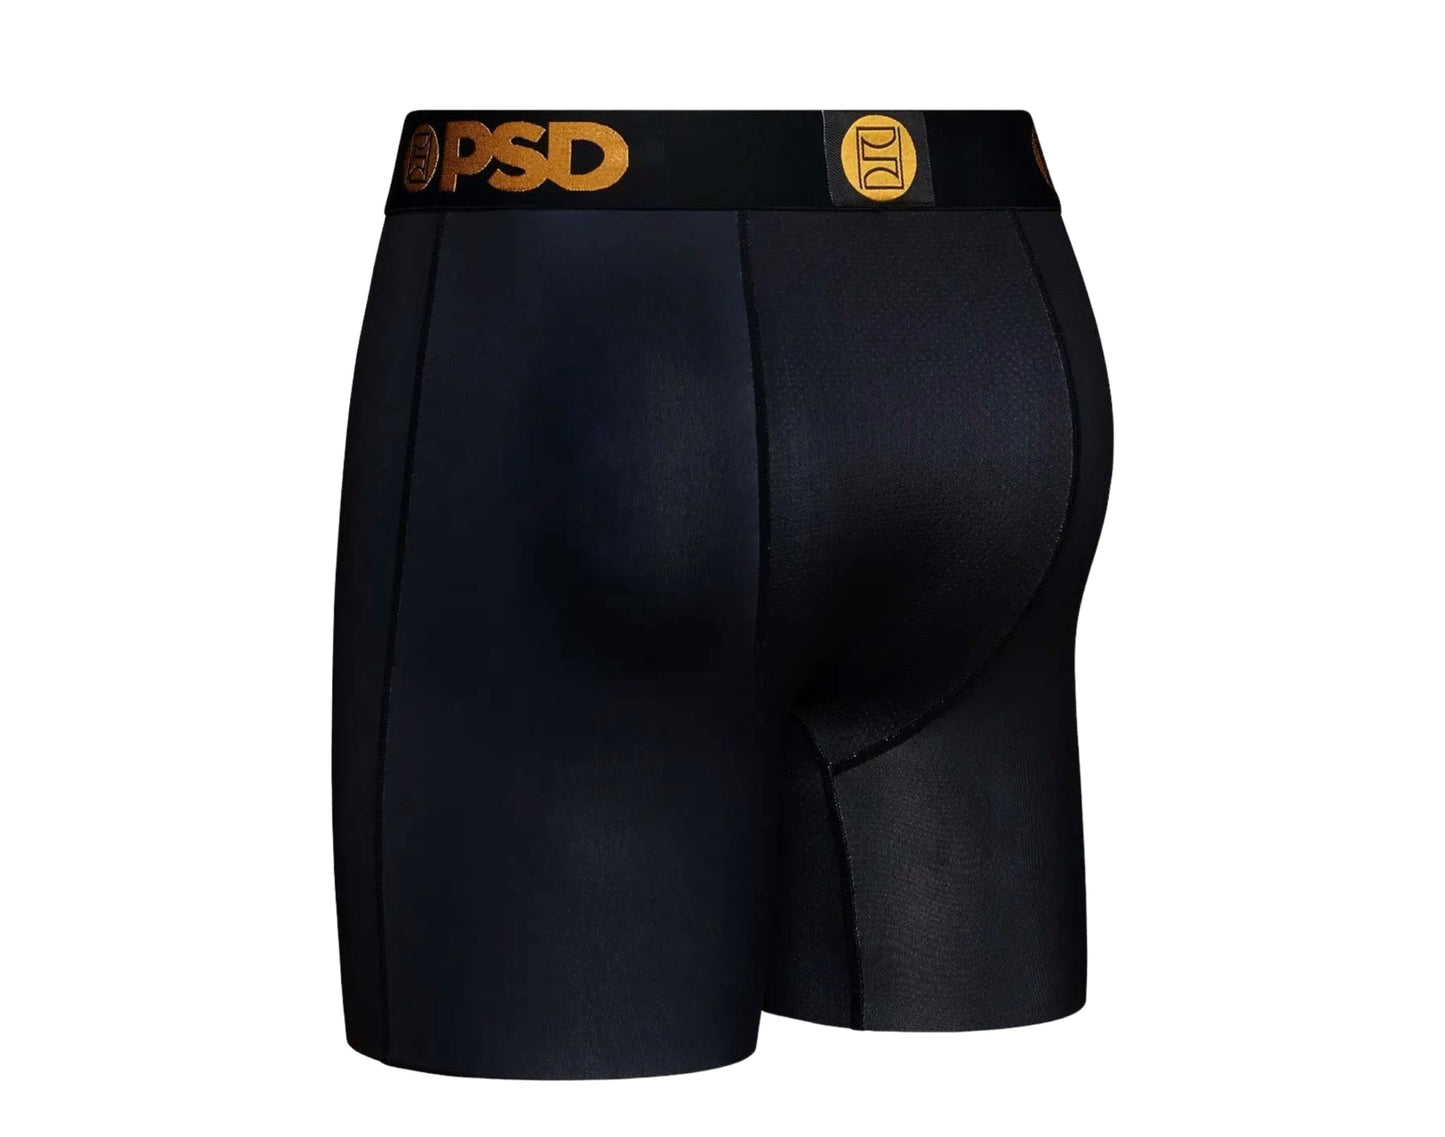 PSD F OFF Briefs Men's Underwear